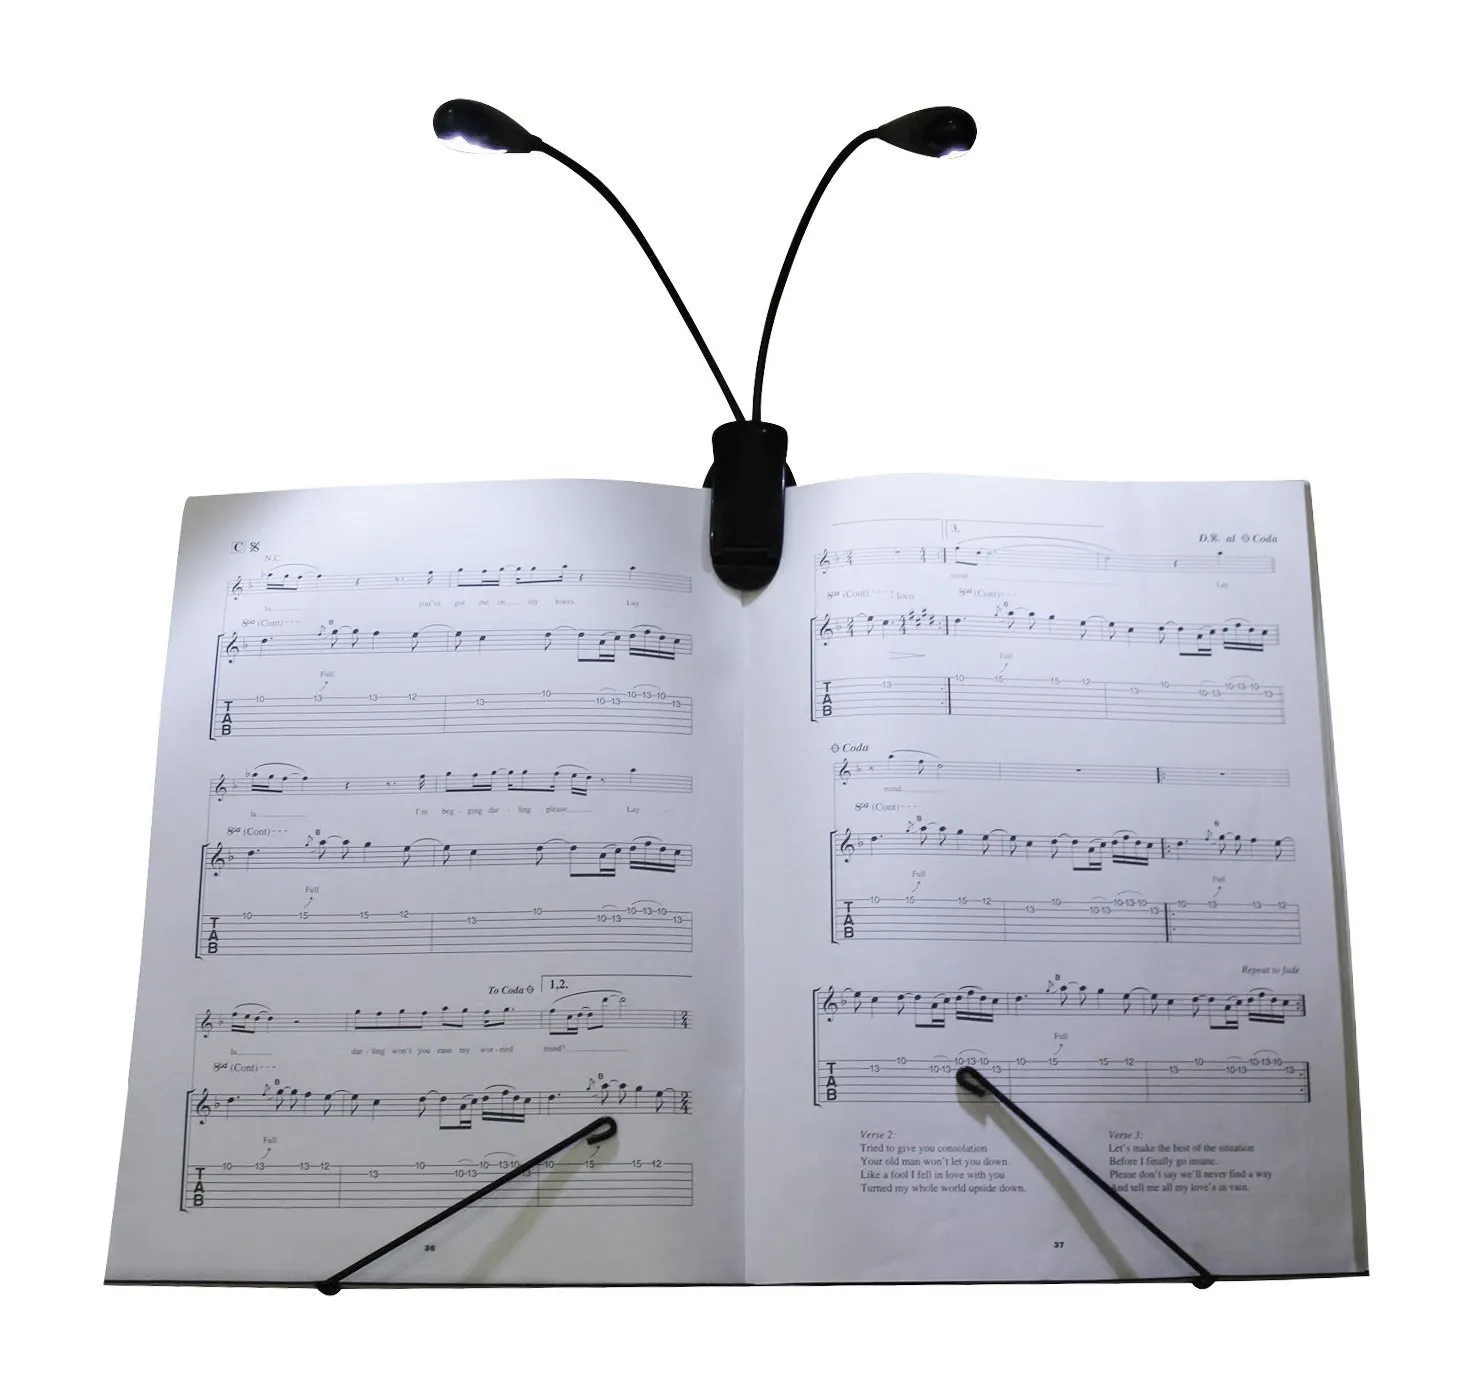 Gadget Flexível Clip-On Clip-On Dual LED 2 Armões Musical Stands Leitura Leitura Ebook Lâmpada de Luz para Ler Livros Stand de Música, Laptops Rápido Navio